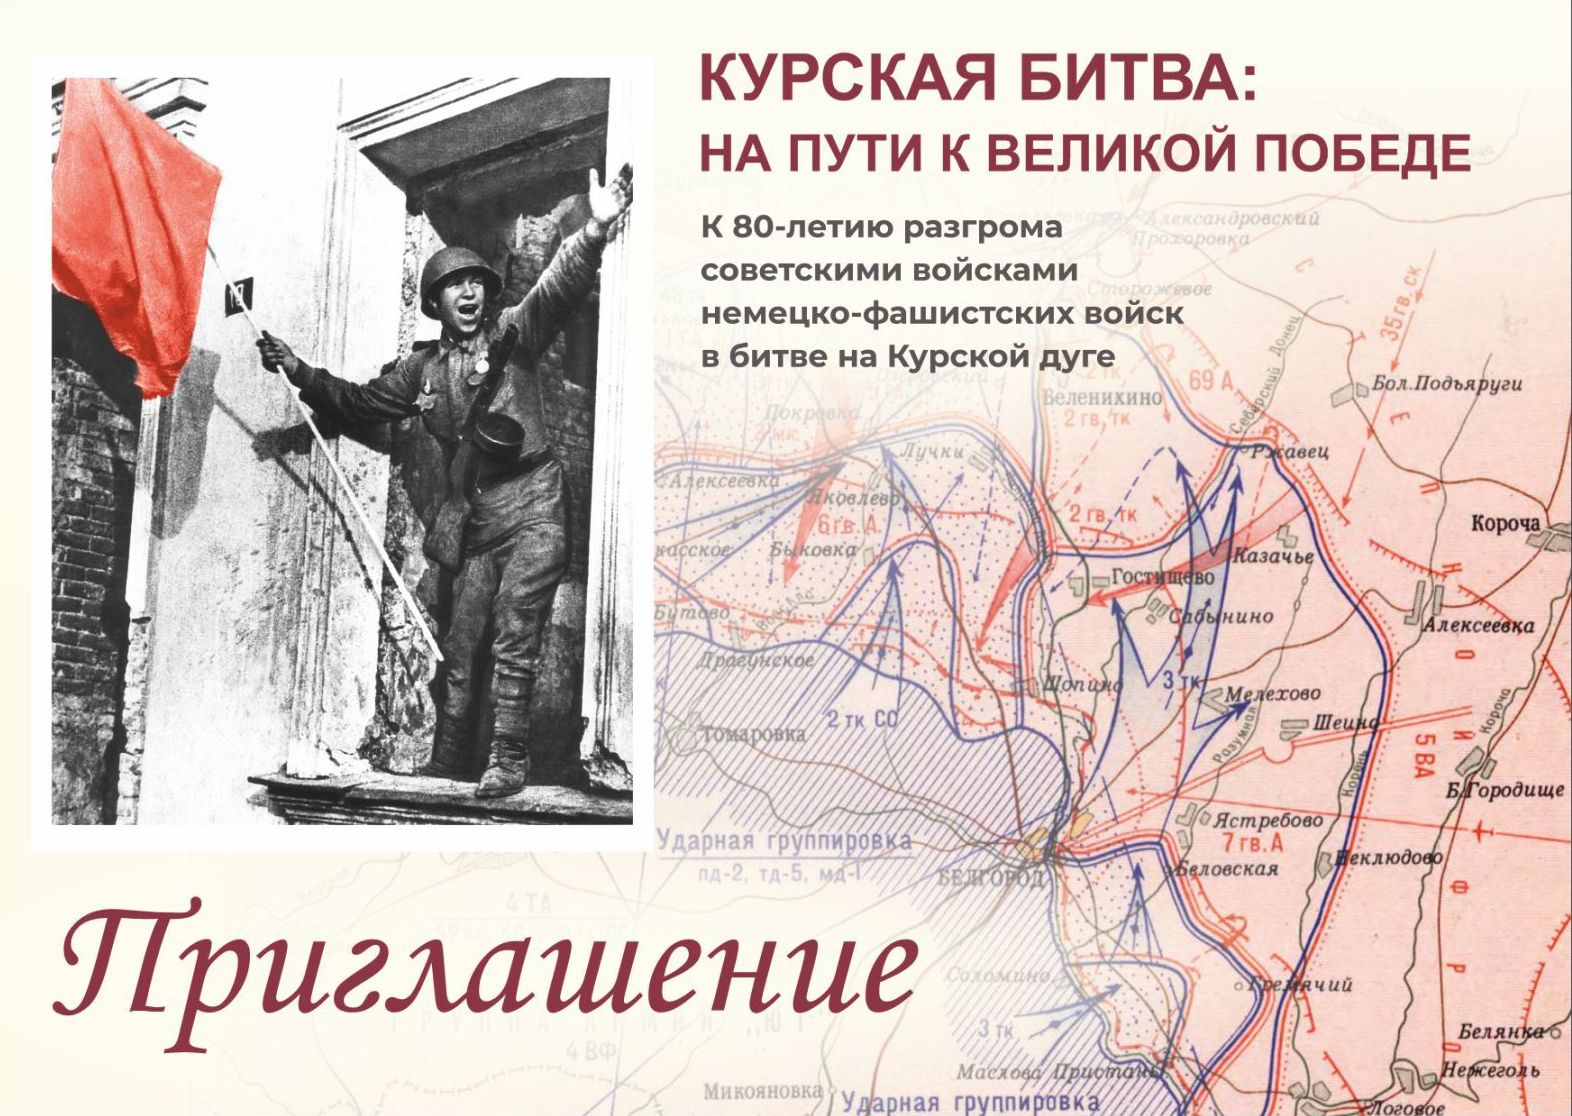 Государственный архив Кузбасса приглашает всех желающих посетить документальную выставку